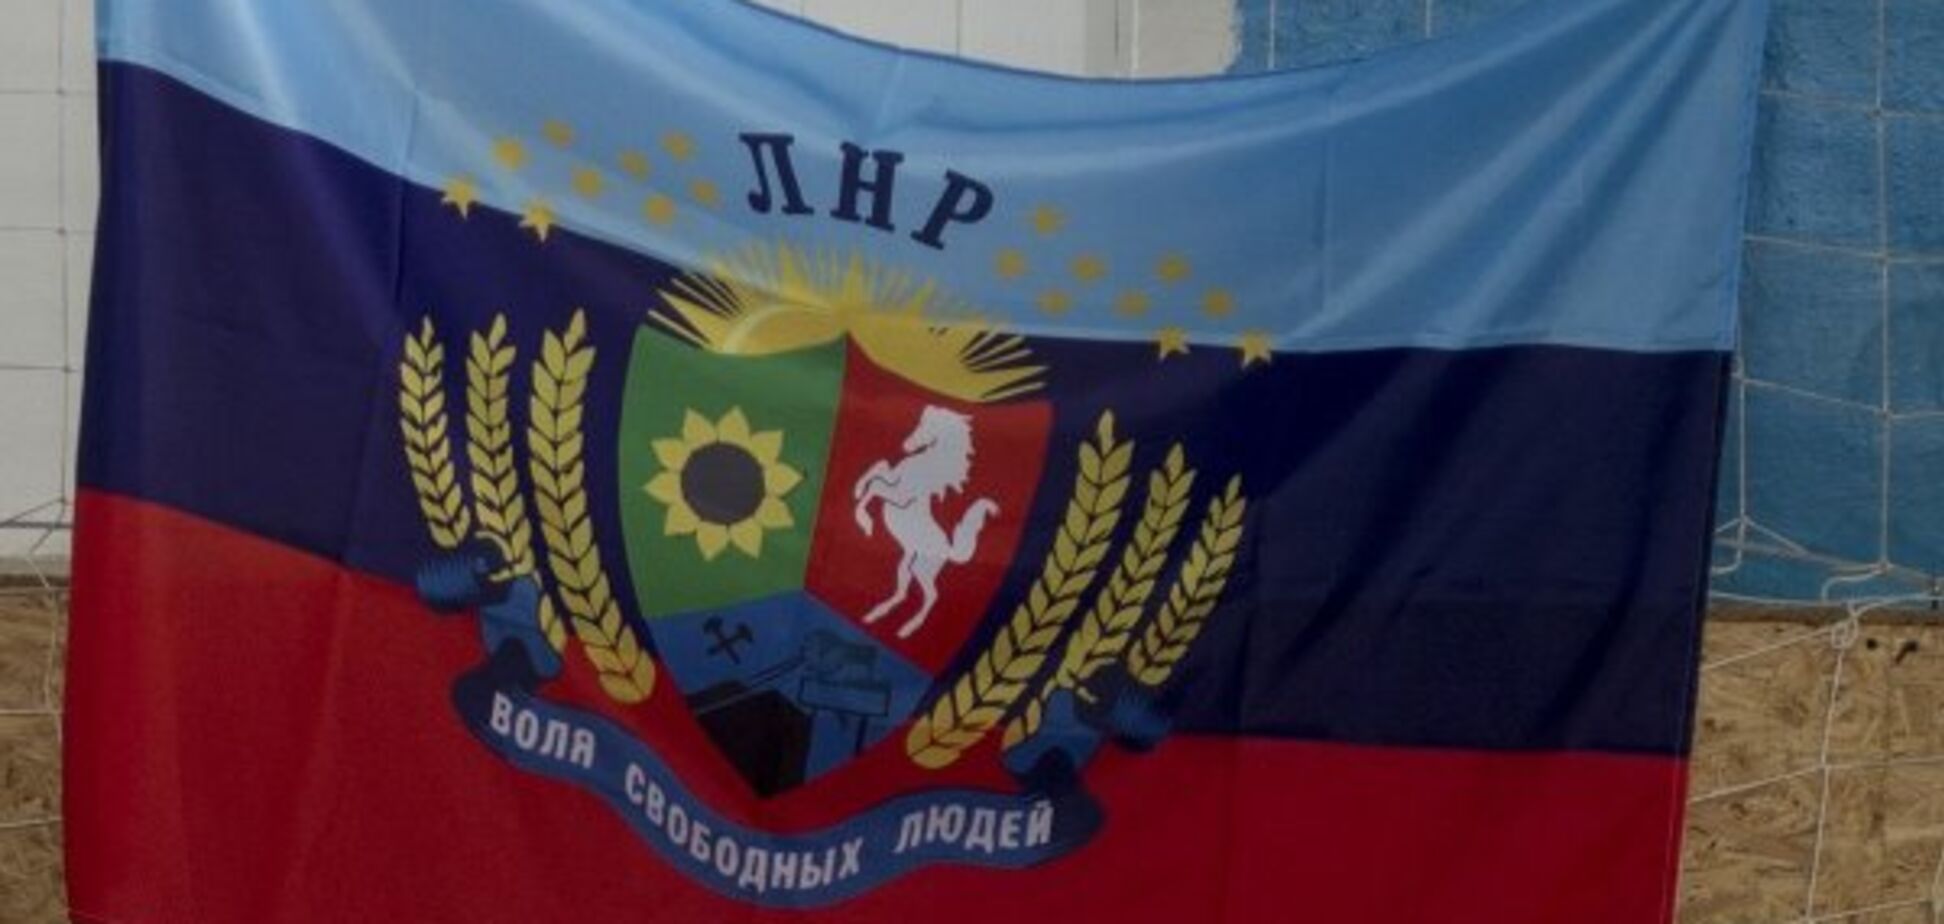 Готовятся: в Луганске распространяют листовки с призывами к 'объединению' с 'ДНР'